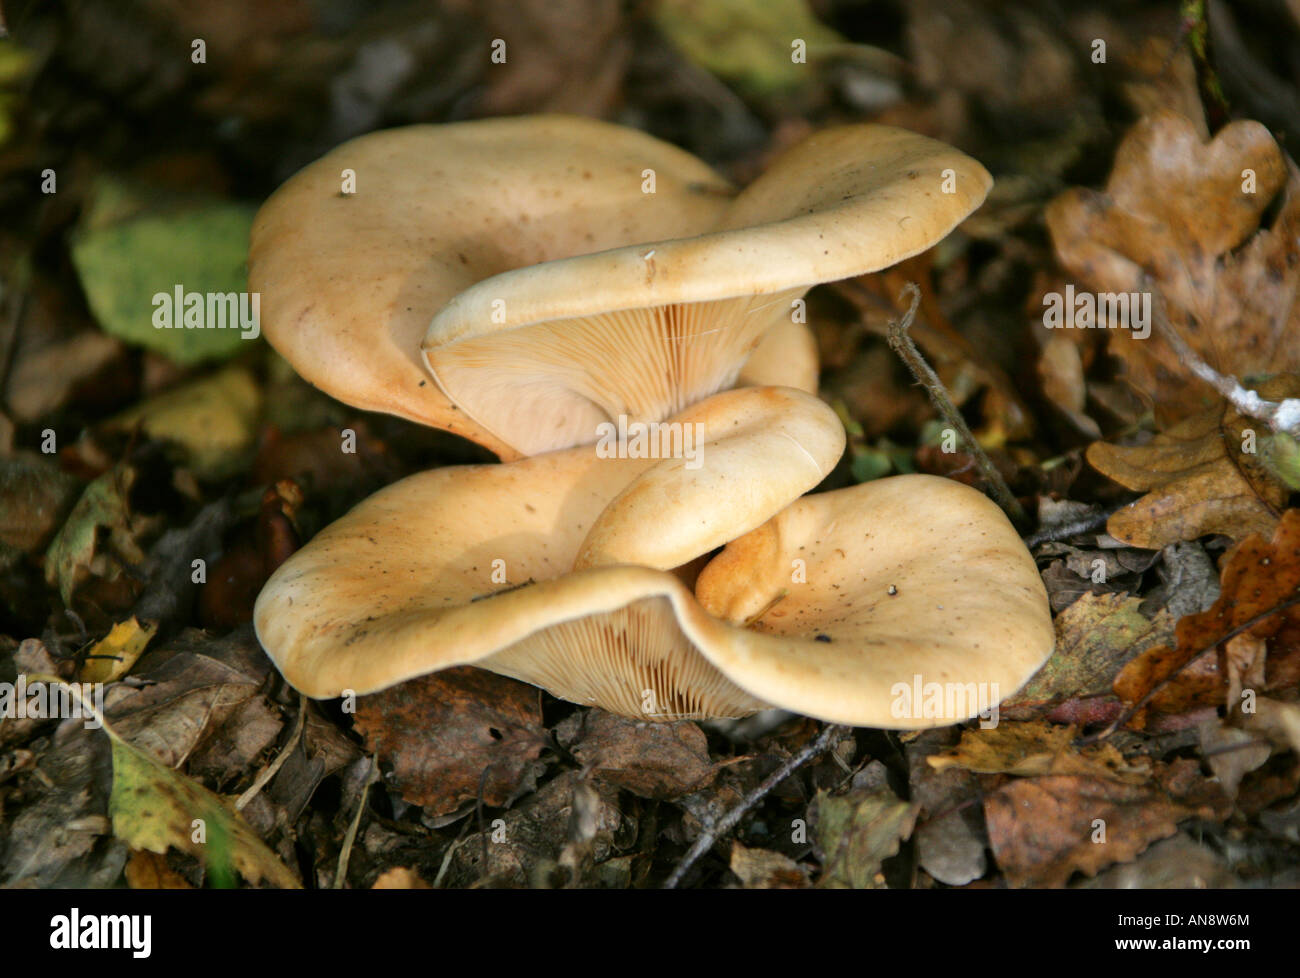 Fleecy Milkcap, Lactarius vellereus, Russulaceae. Stock Photo